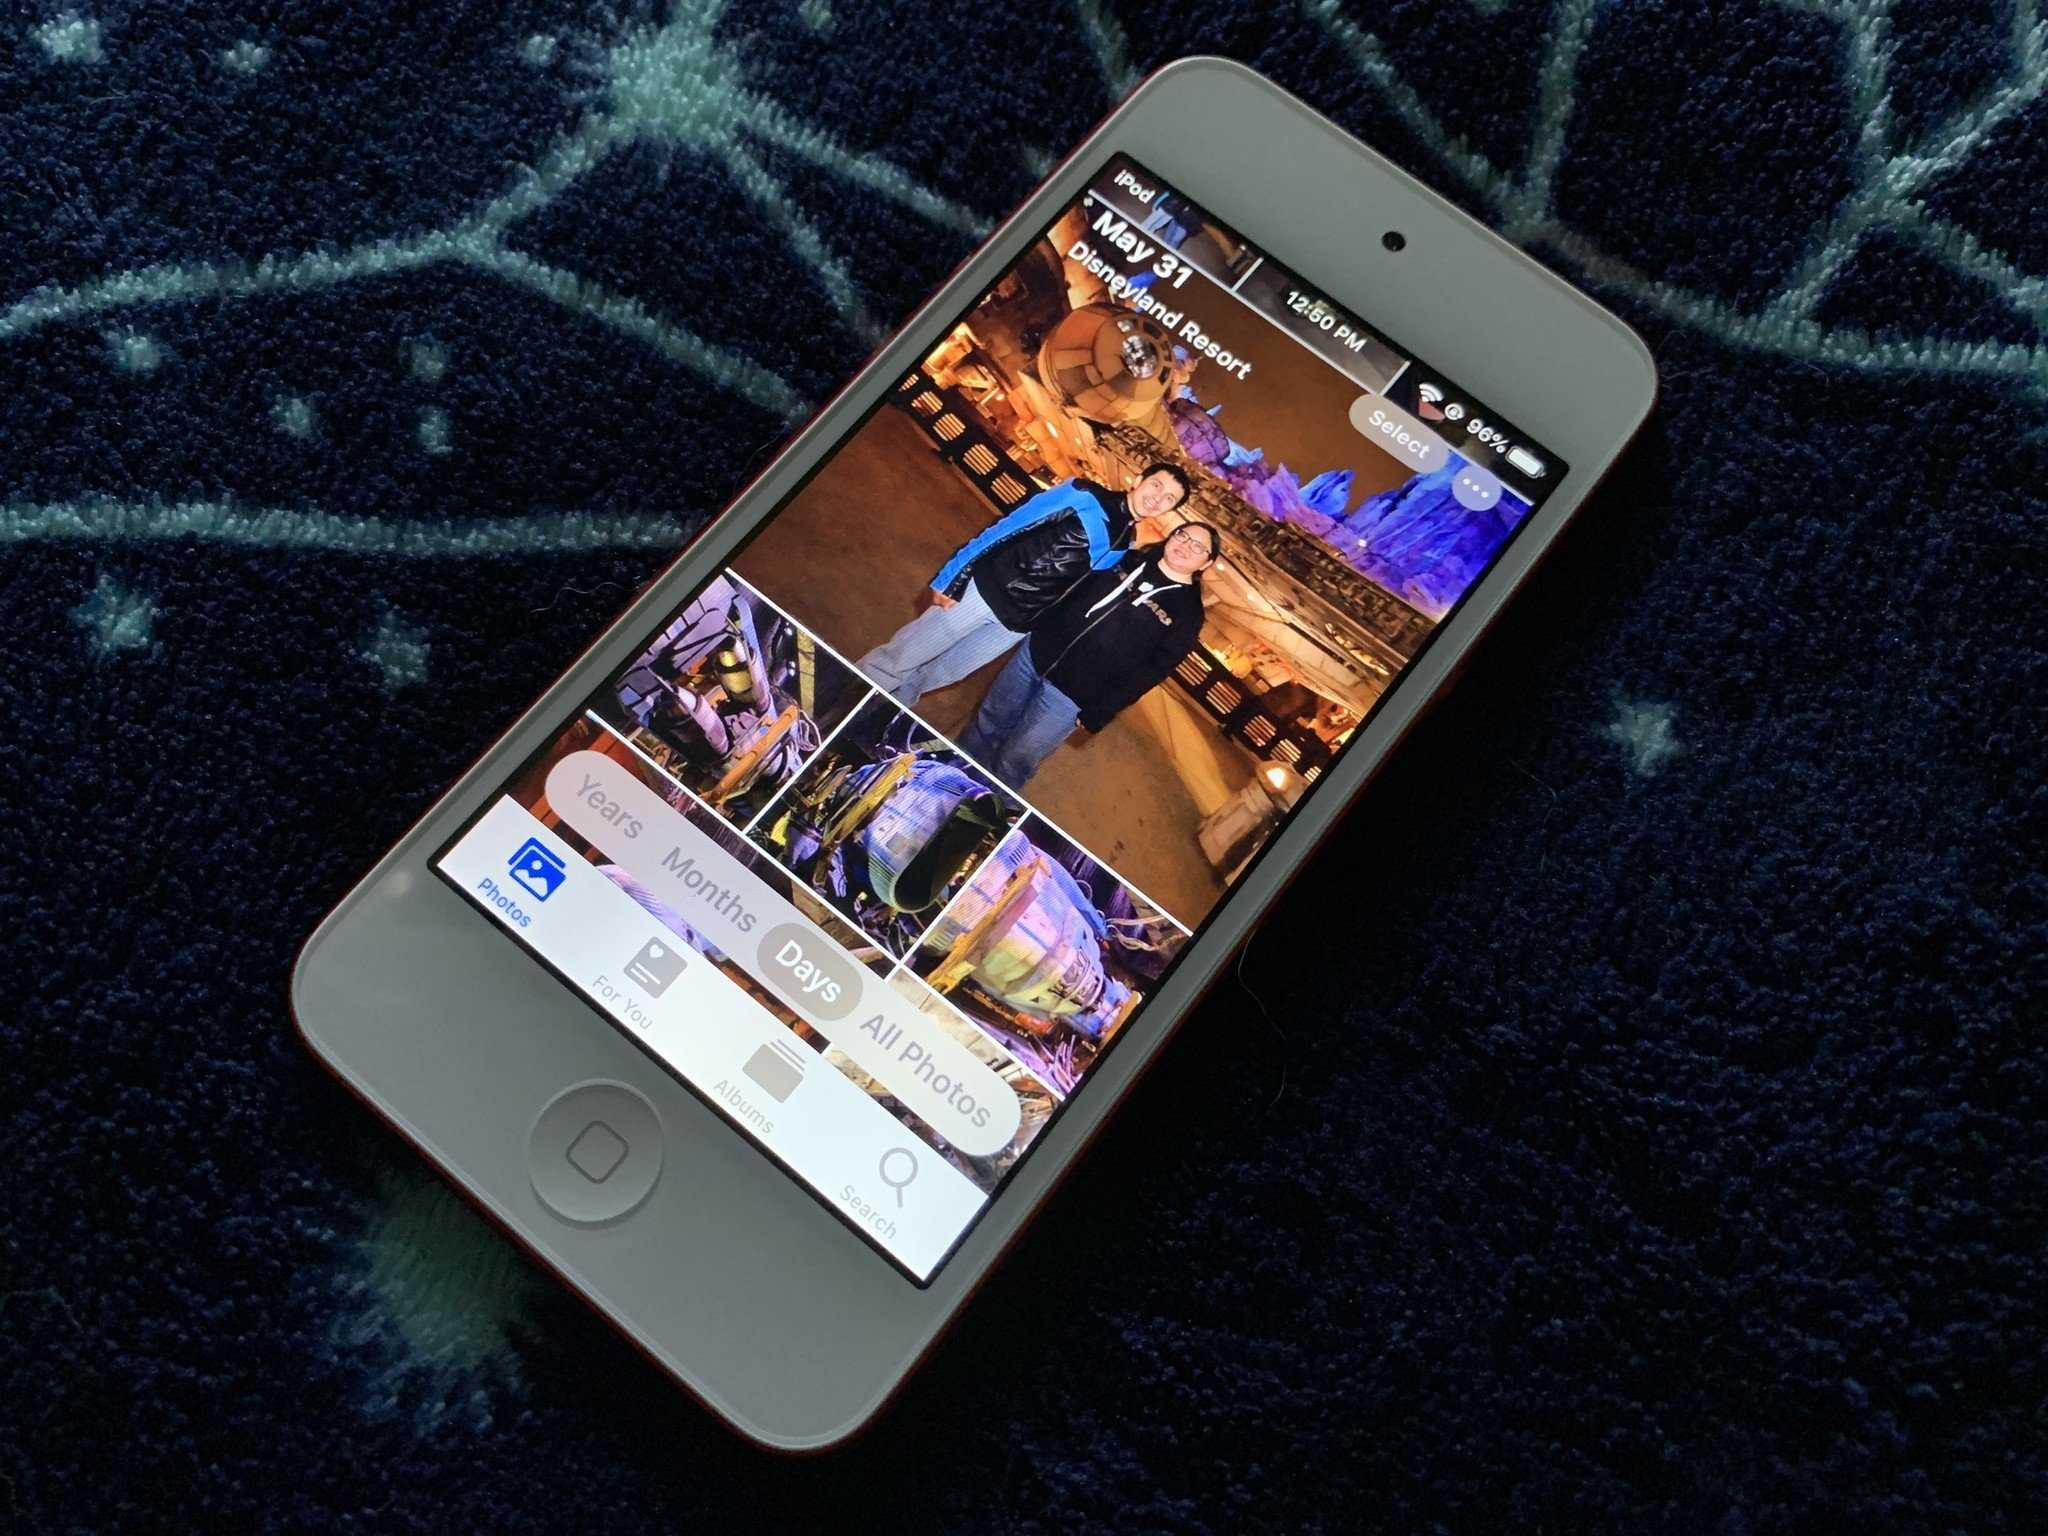 Видео из фото на iphone и ipad – лучшие приложения для создания видеороликов из фотографий